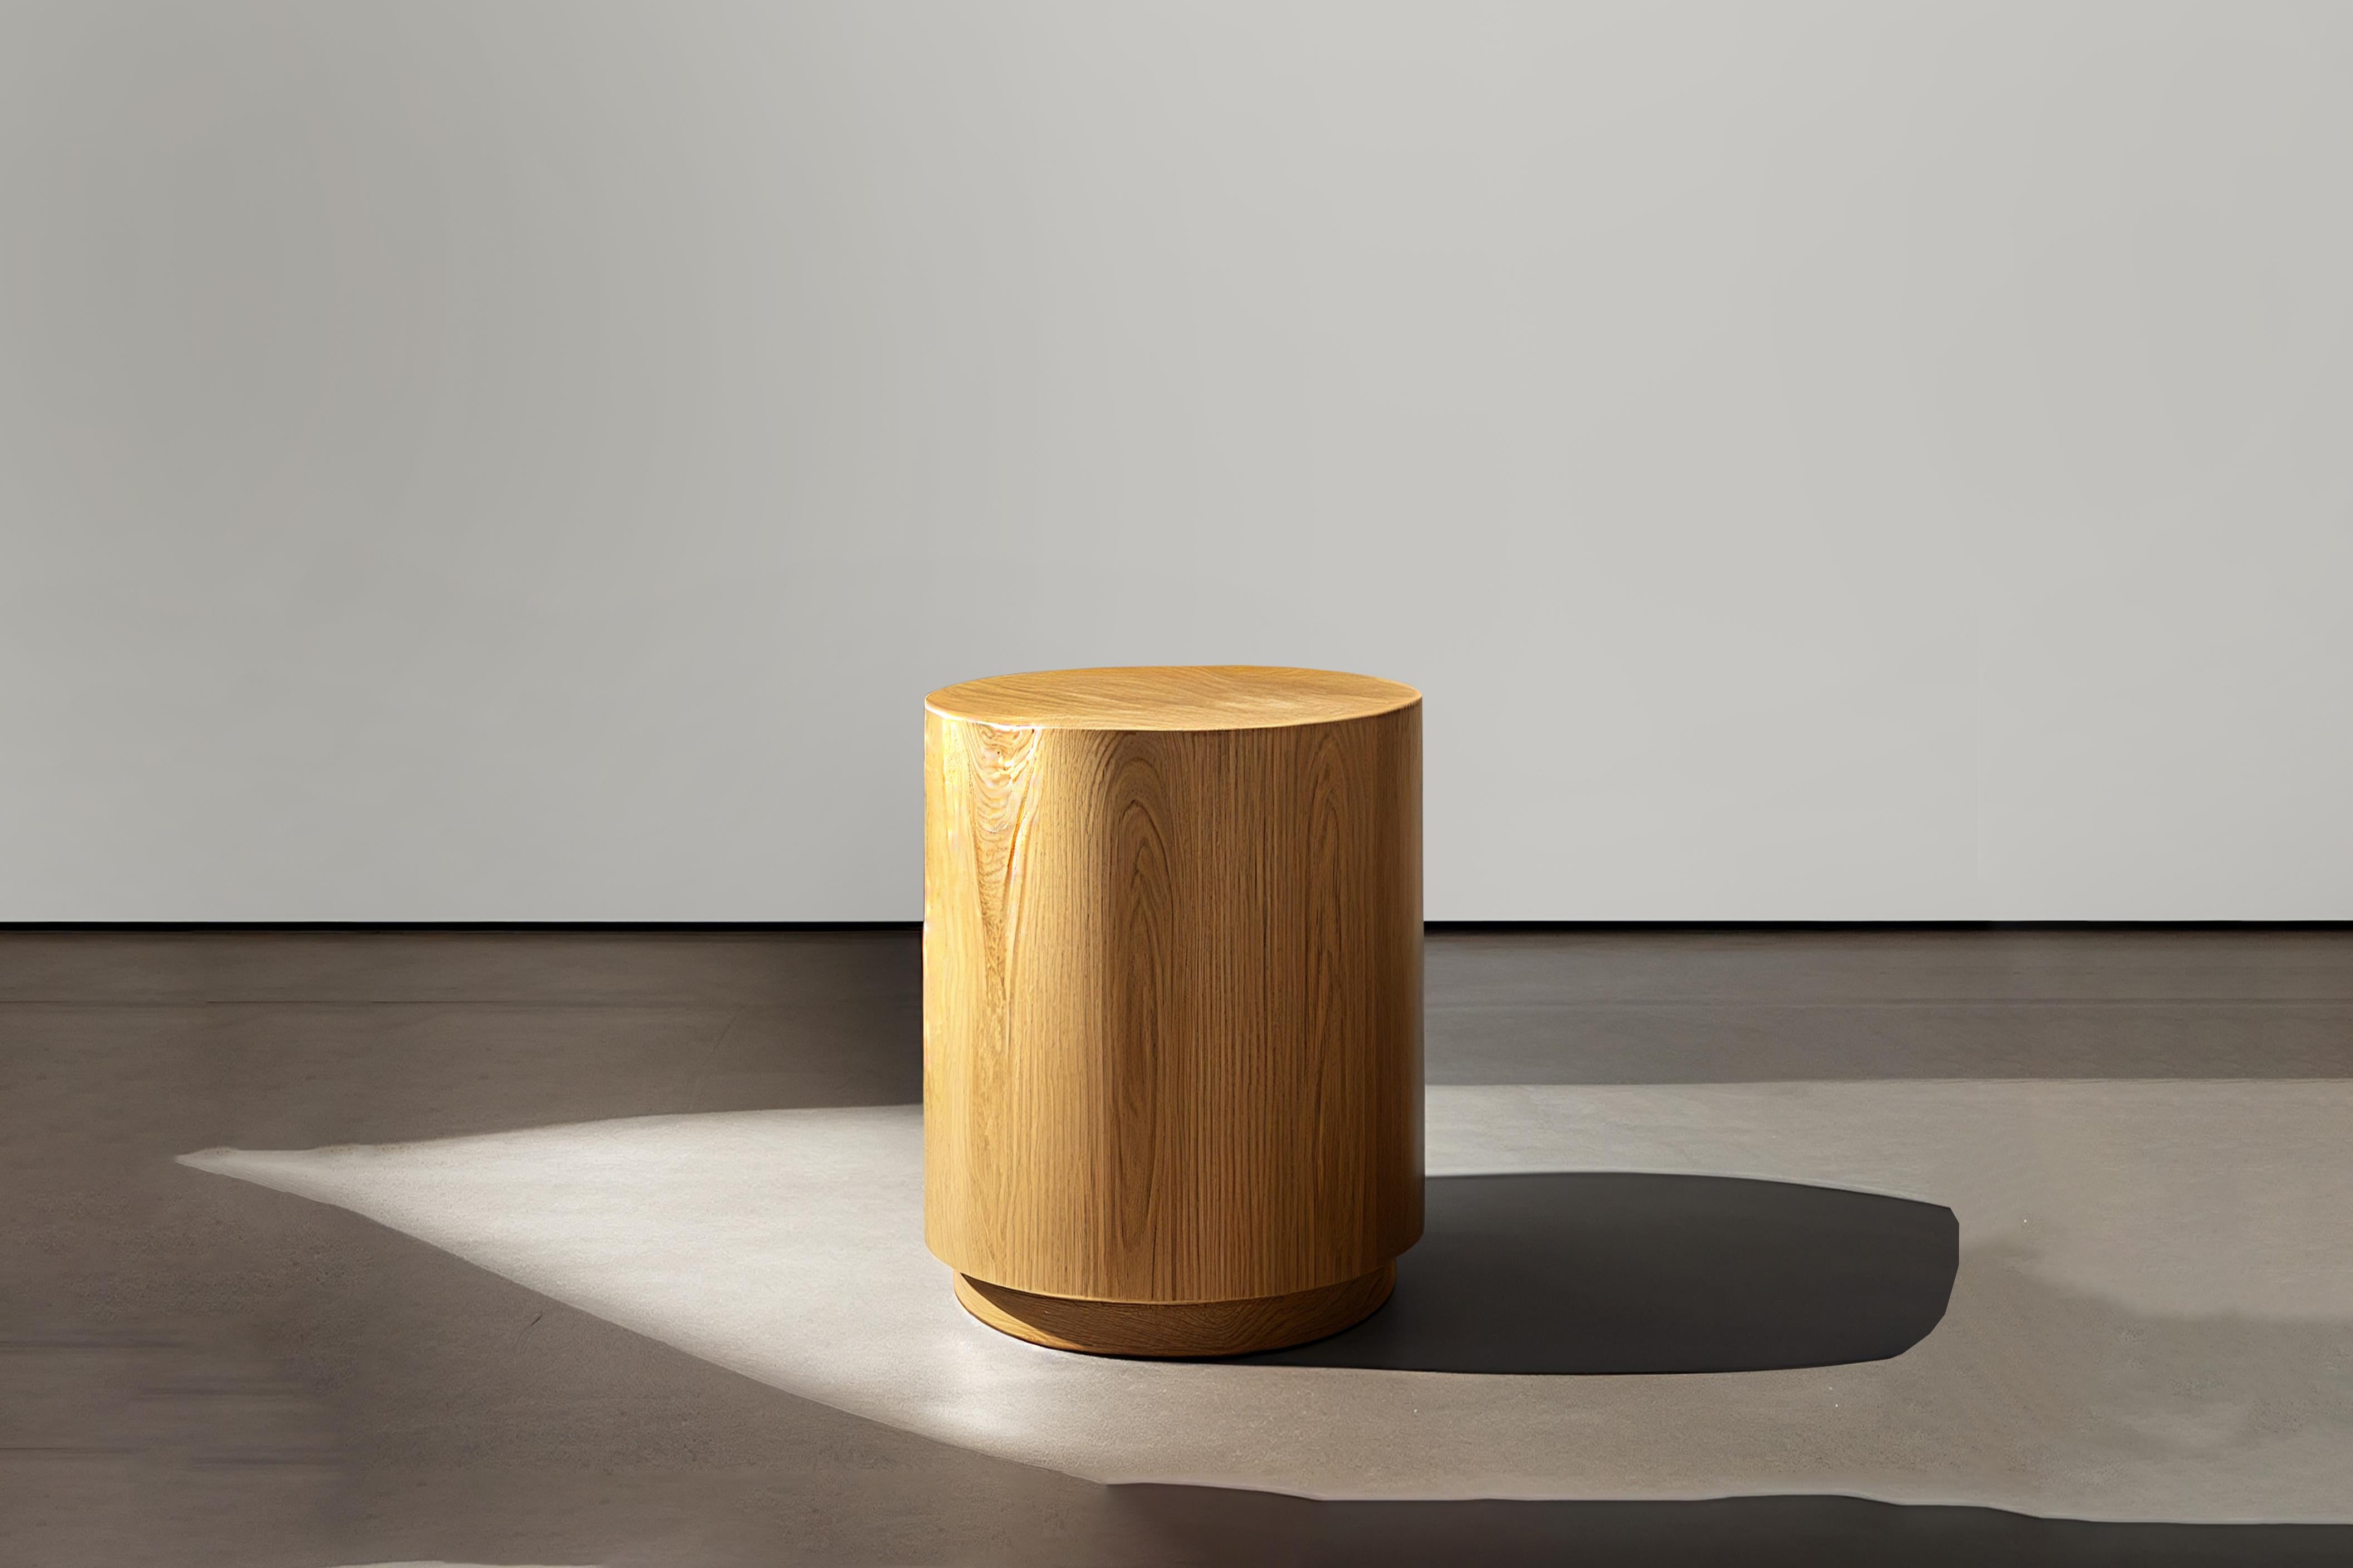 Una mesa auxiliar brutalista hecha de mdf de primera calidad con un bonito acabado de chapa de madera. 
Todas las piezas están recubiertas de poliuretano en acabado semimate. 

La robustez de la construcción y la excepcional artesanía de cada mueble